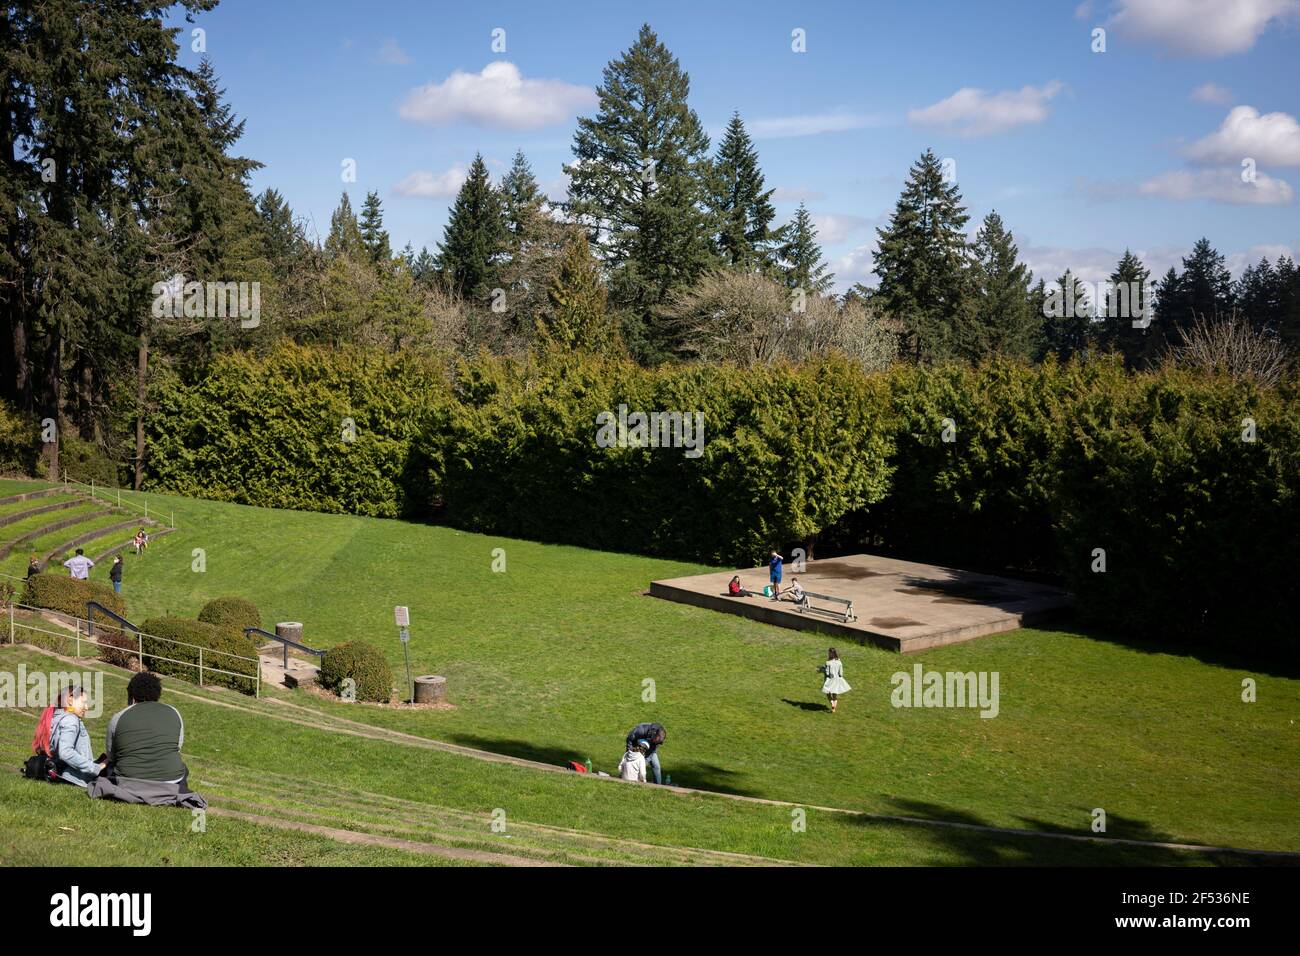 Besucher des Washington Park Amphitheatre in Portland, Oregon, genießen die Natur am Dienstag, 23. März 2021, während der Frühling inmitten der Pandemie kommt. Stockfoto